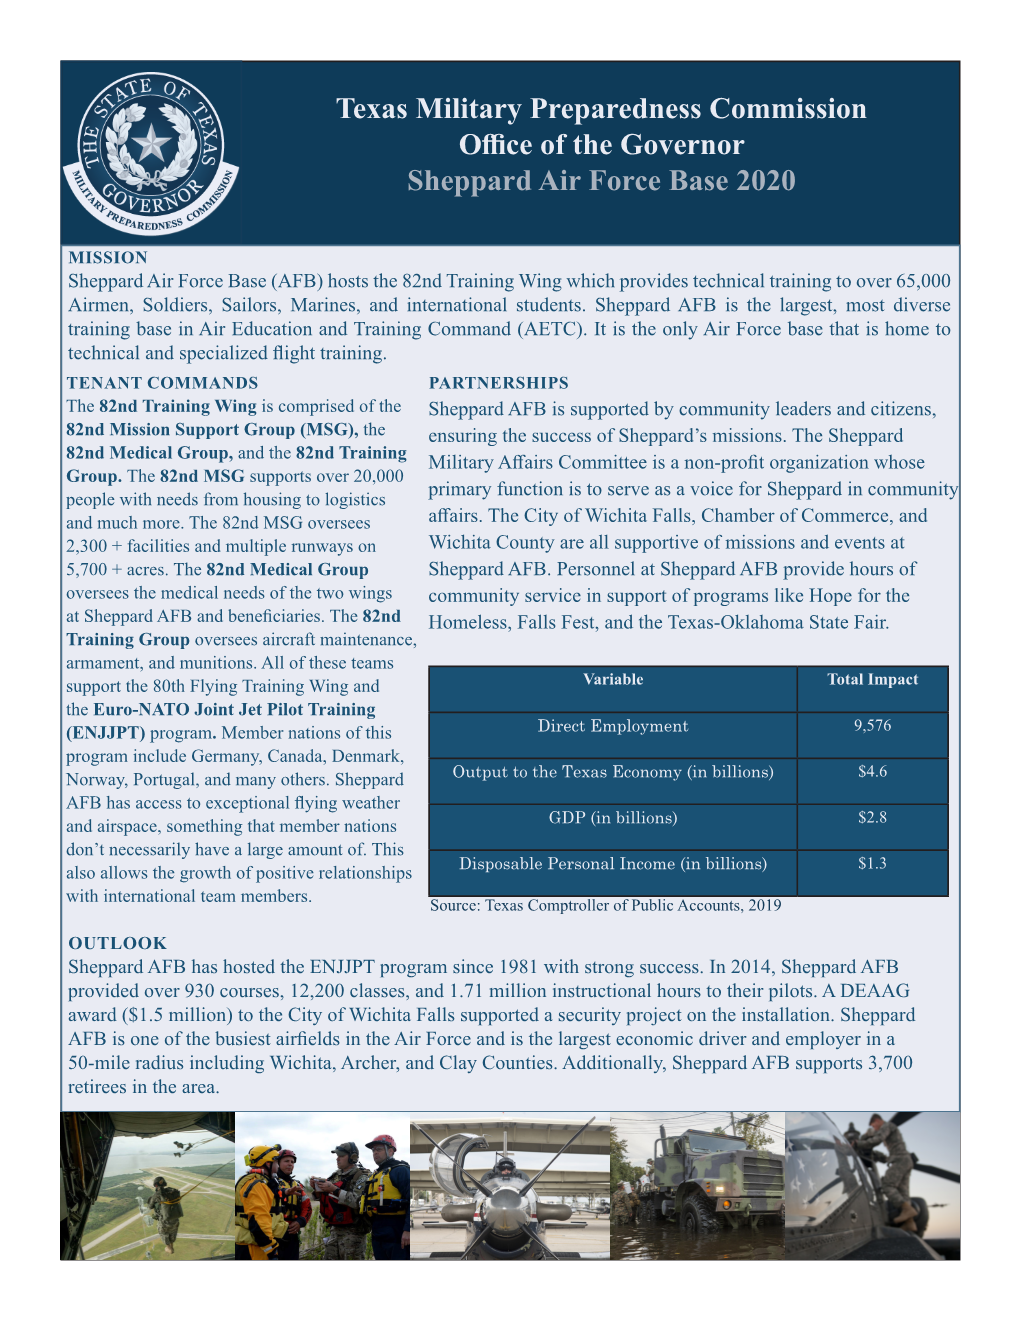 Sheppard Air Force Base 2020